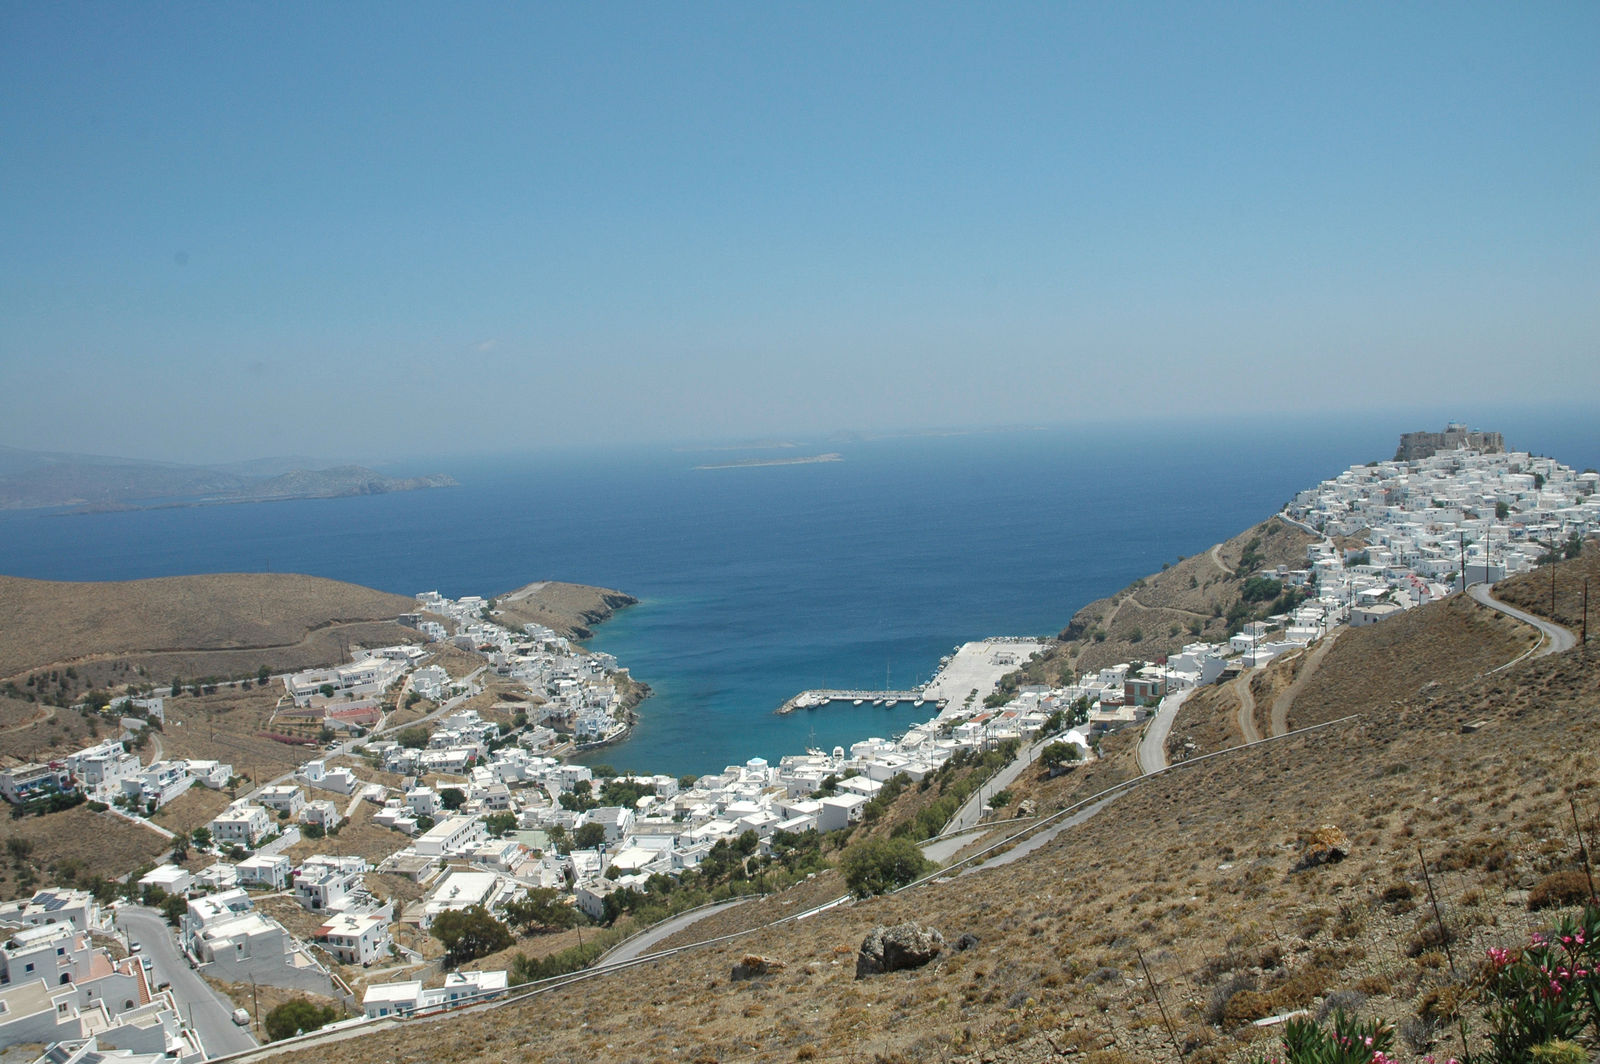 The greek island of Astypalea